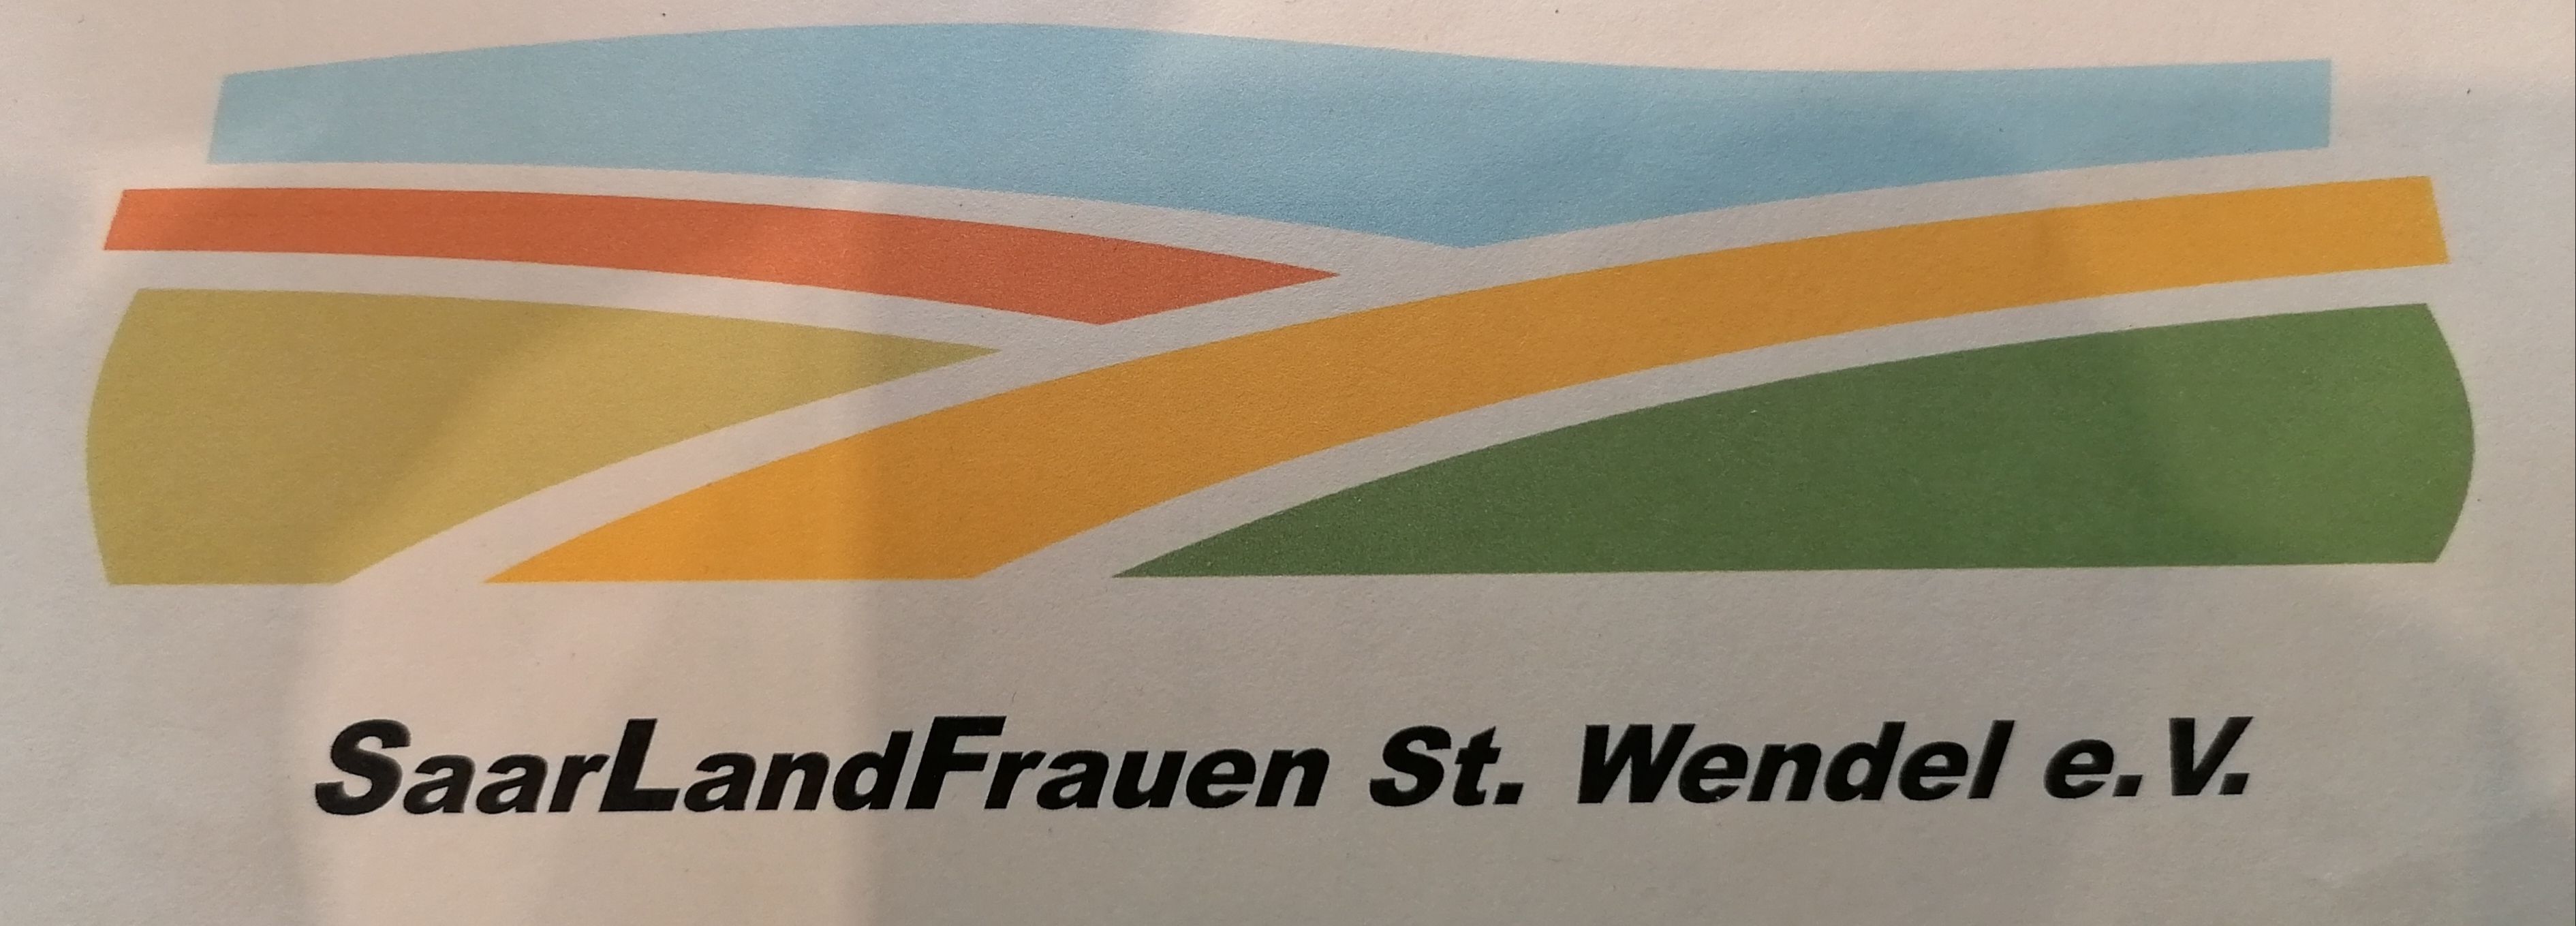 Profilbild des Vereins SaarLandFrauen St.Wendel